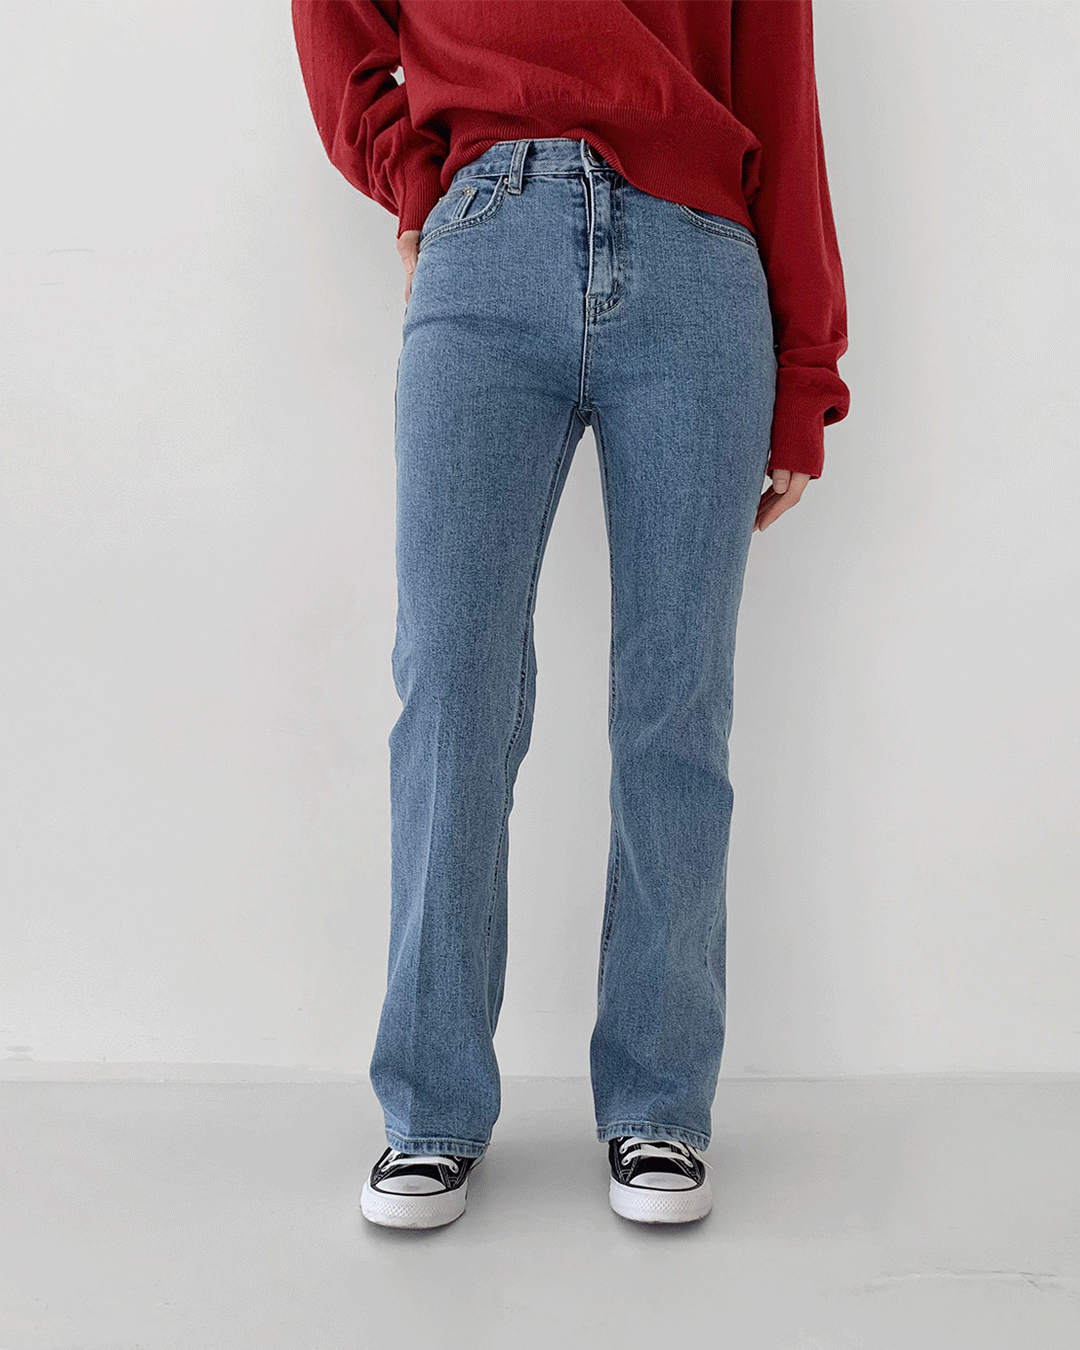 It jeans